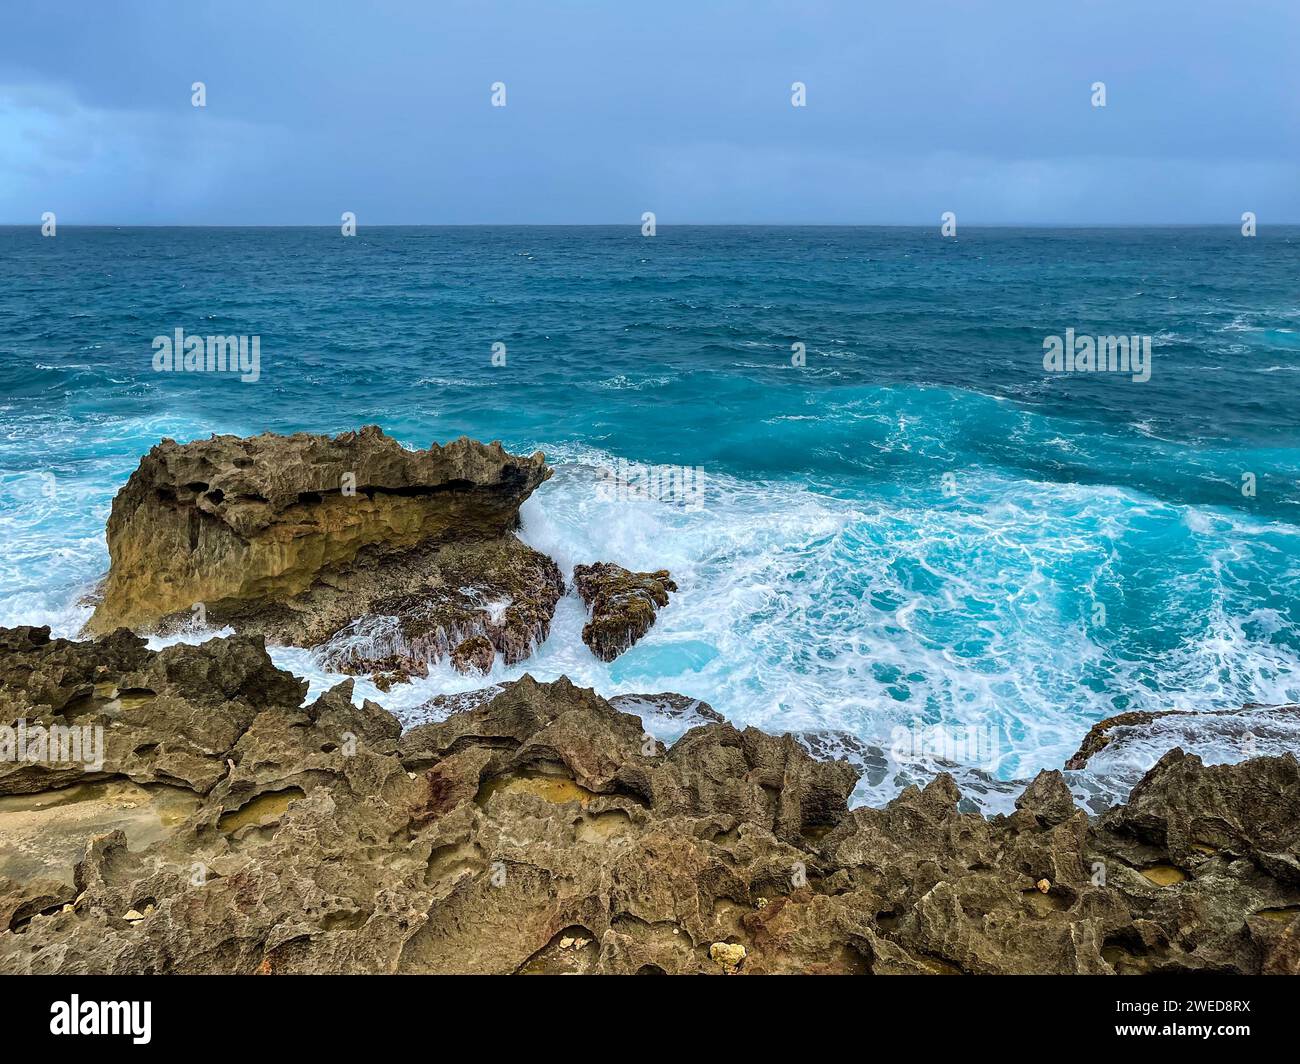 Catturando l'incantevole bellezza dei paesaggi di Porto Rico, dove l'oceano incontra le coste rocciose sotto l'ampio cielo Foto Stock